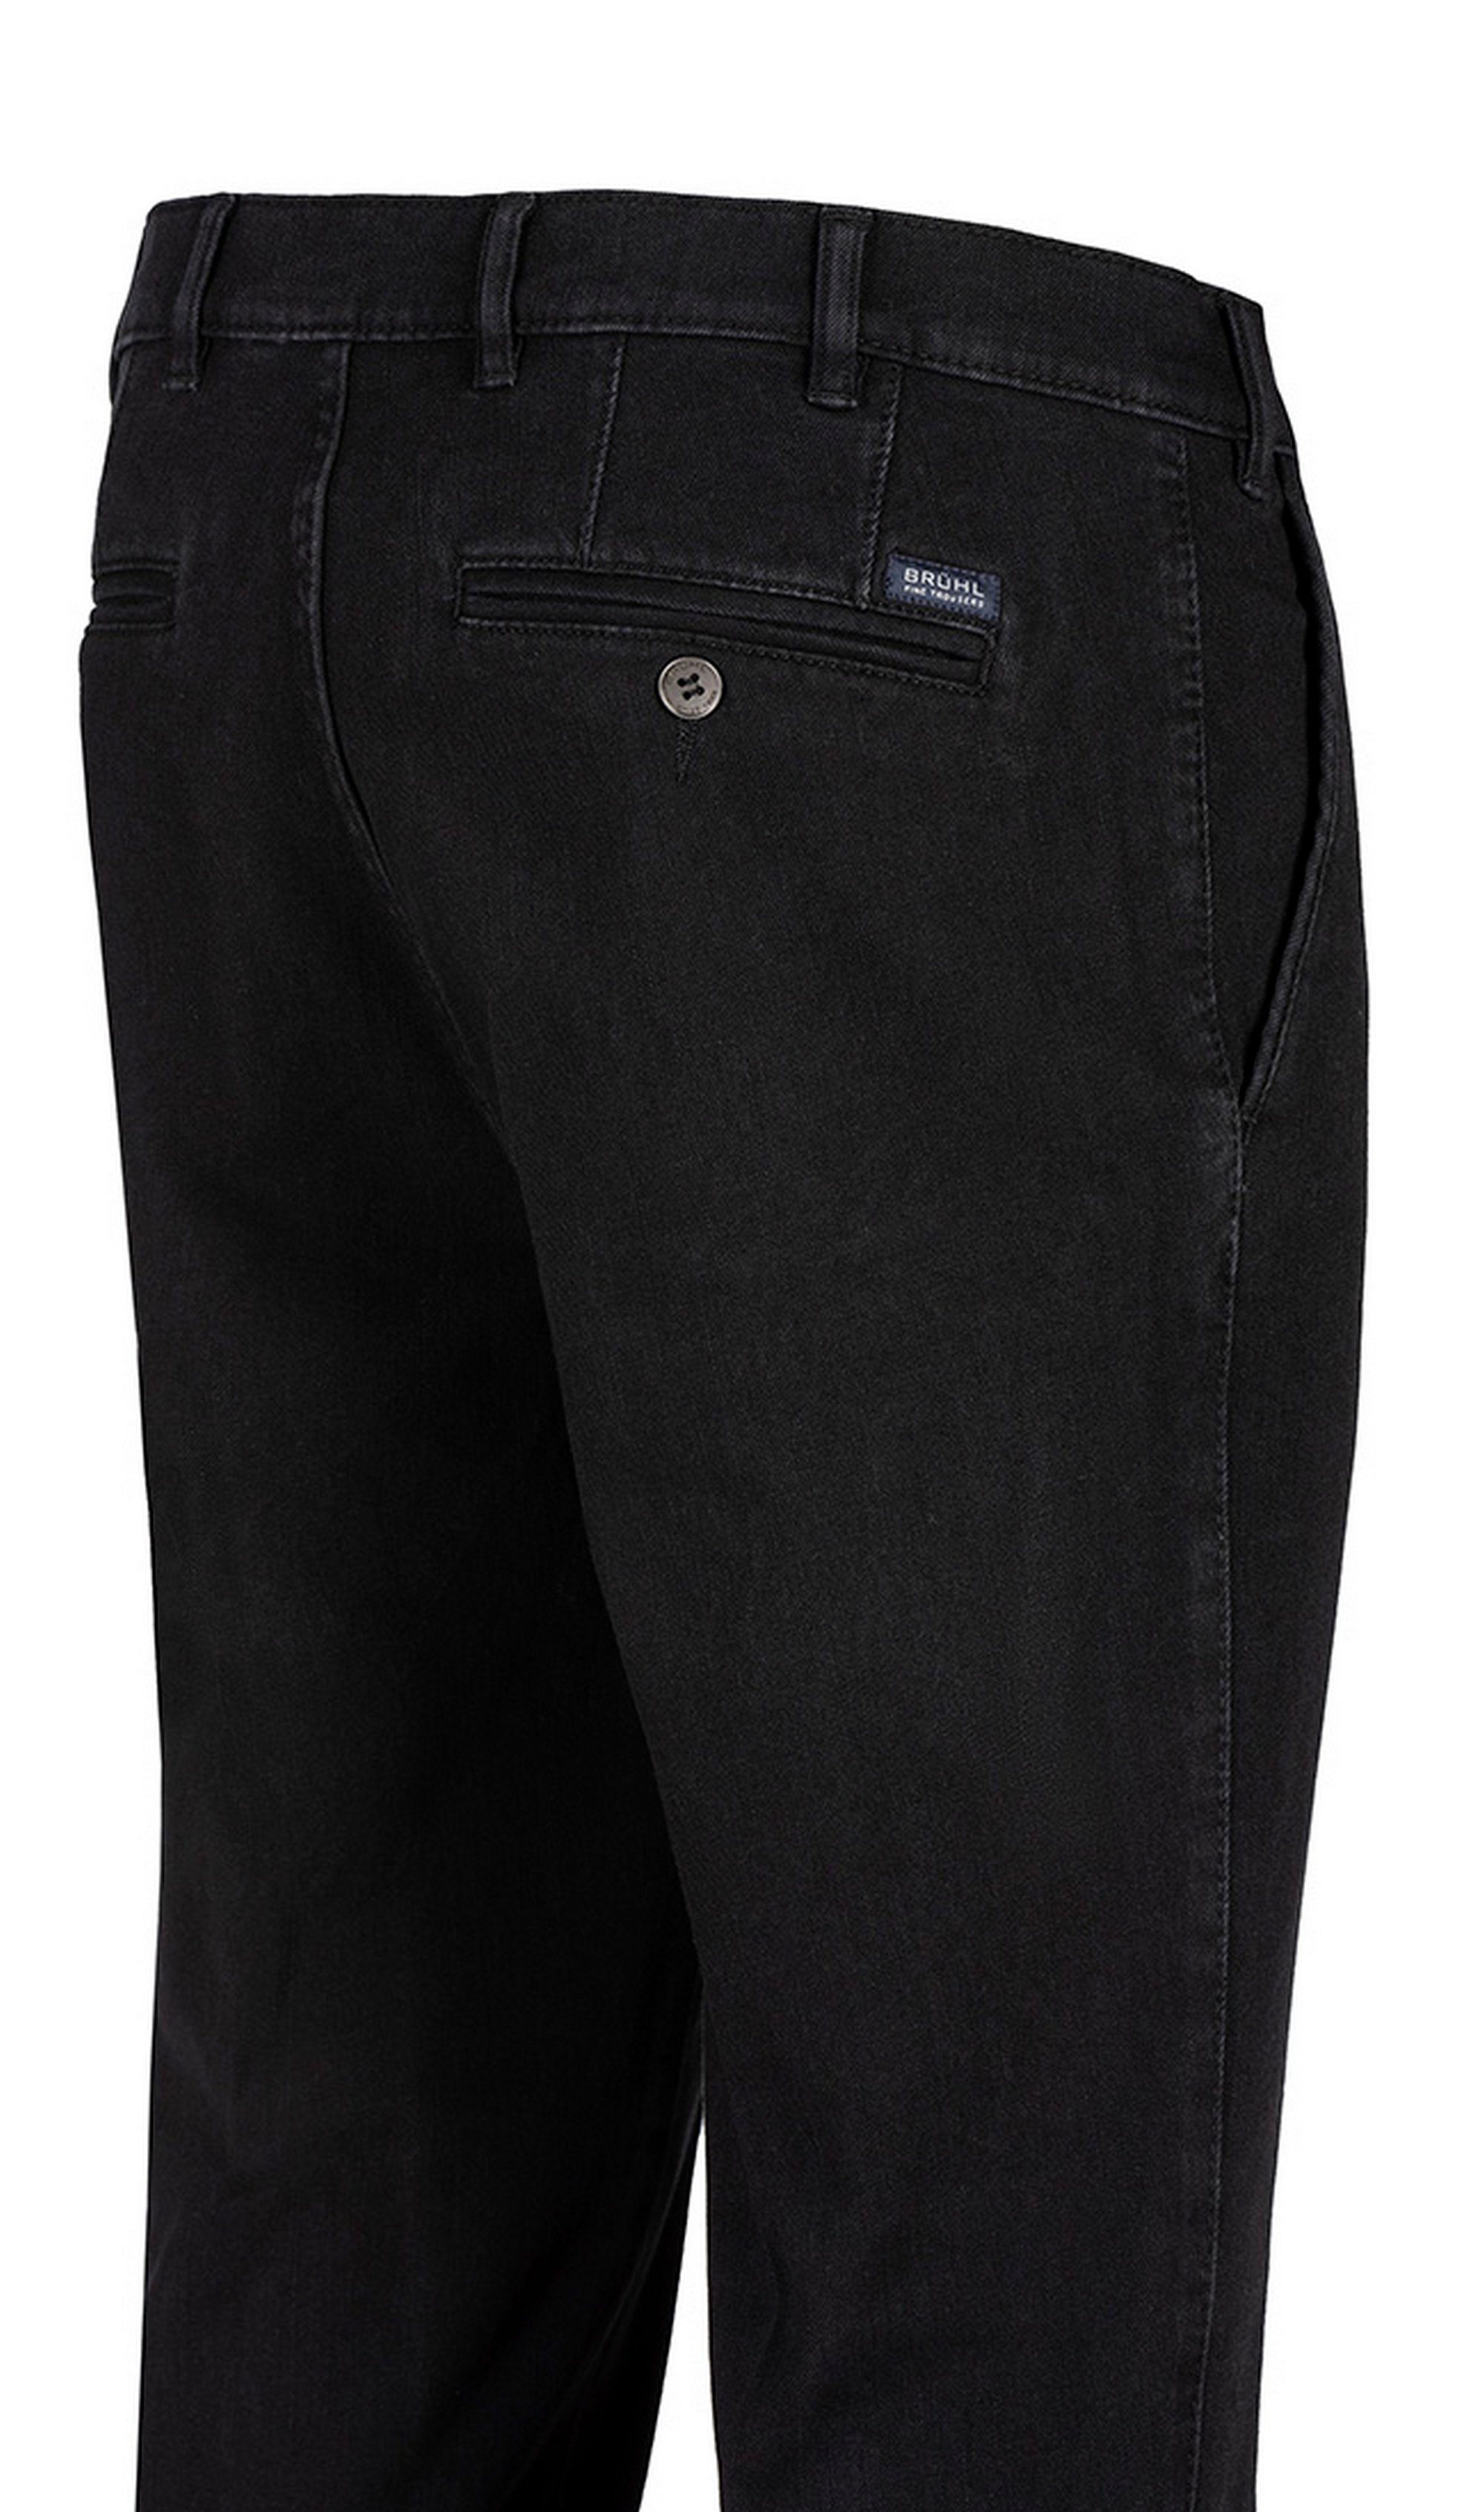 Brühl Bequeme schwarz DO optimalem Tragekomfort Jeans mit Parma